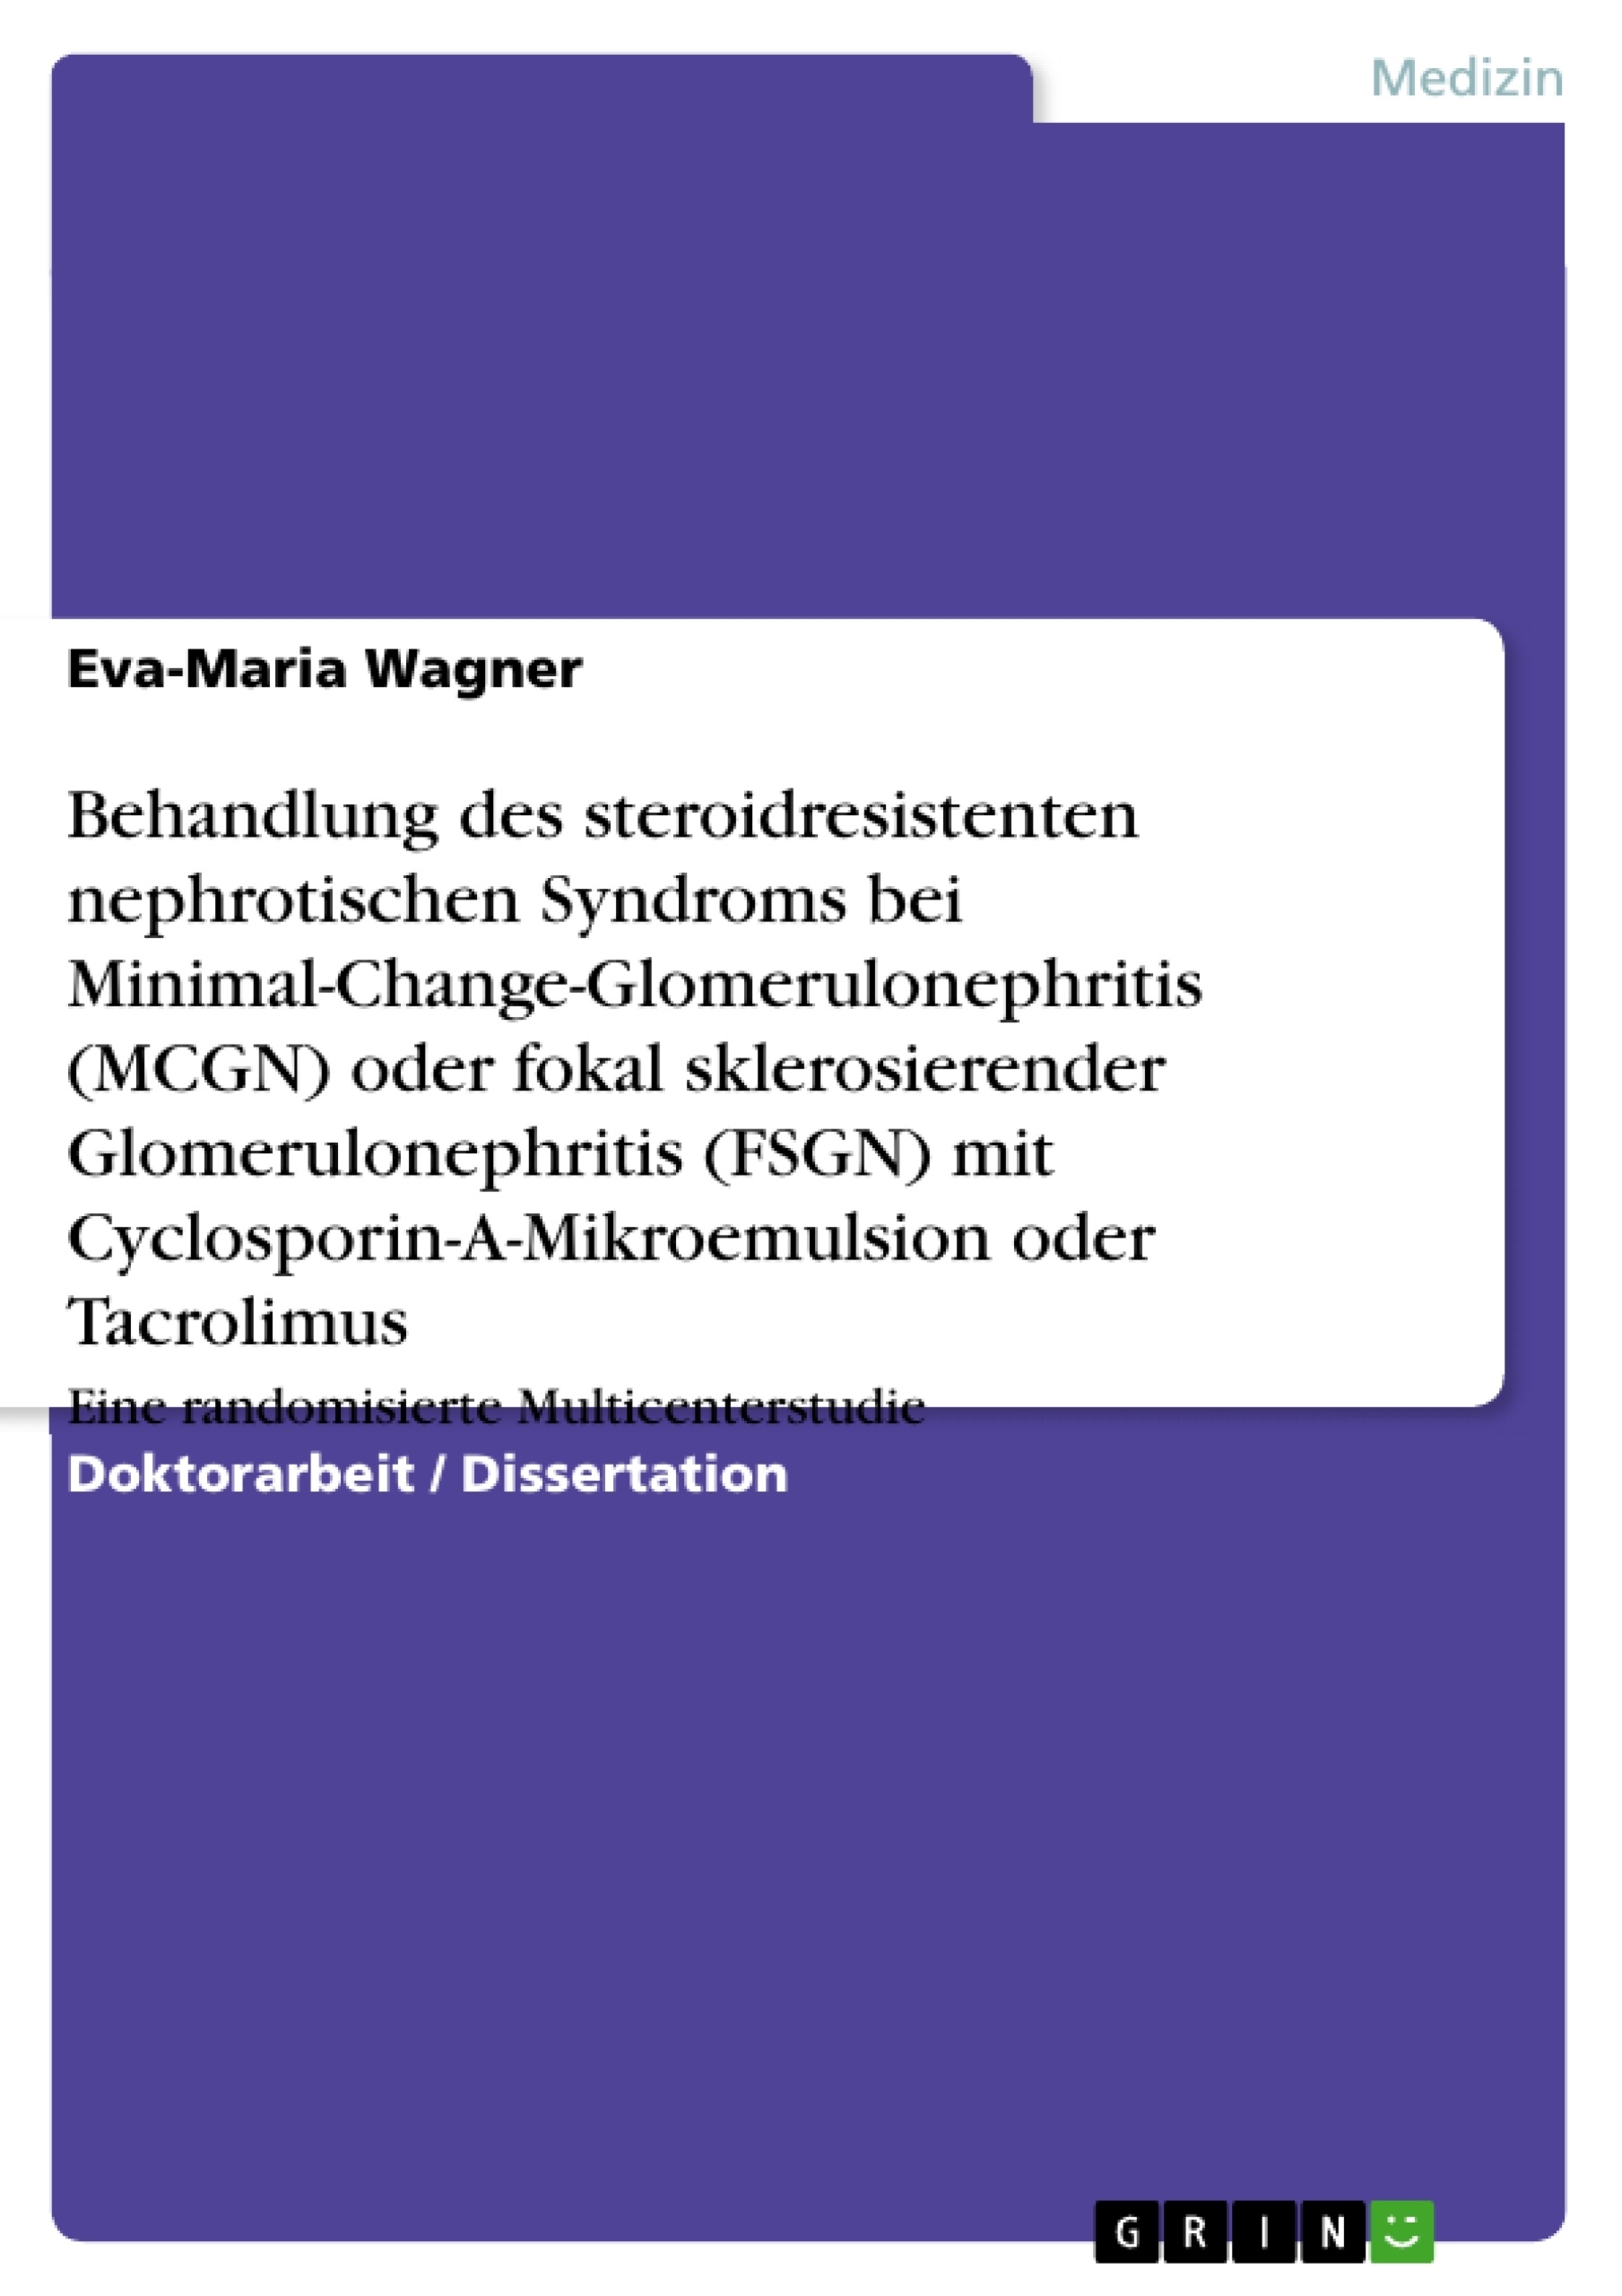 Titre: Behandlung des steroidresistenten nephrotischen Syndroms bei Minimal-Change-Glomerulonephritis (MCGN) oder fokal sklerosierender Glomerulonephritis (FSGN) mit Cyclosporin-A-Mikroemulsion oder Tacrolimus